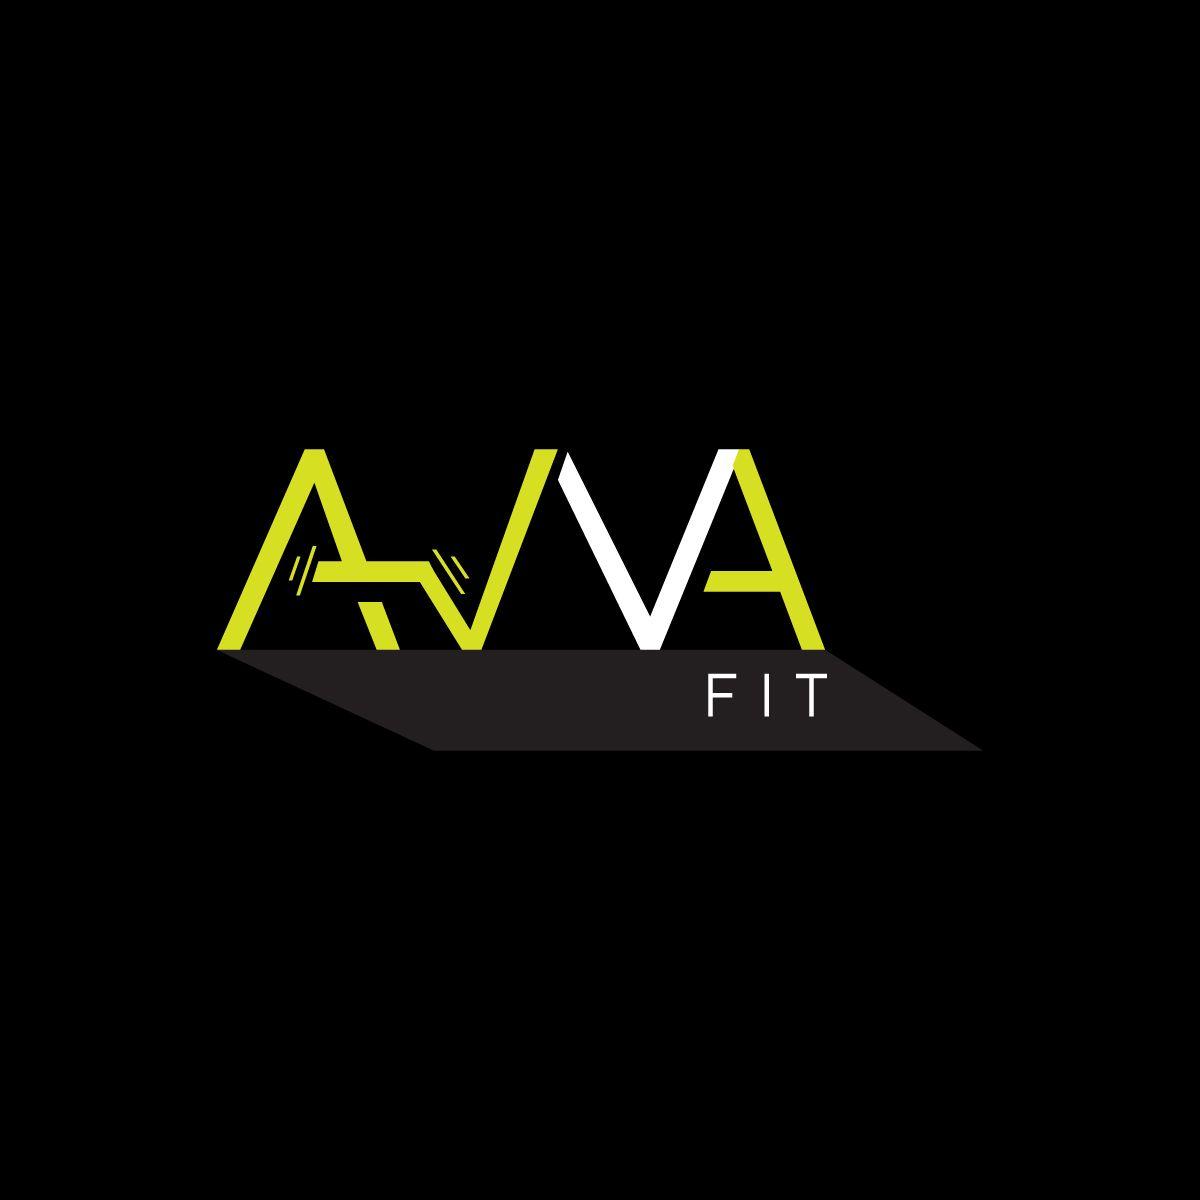 Avva Logo - Logo Design for AVVA FIT by **INCREDIBLEDESIGNERS** | Design #20589652